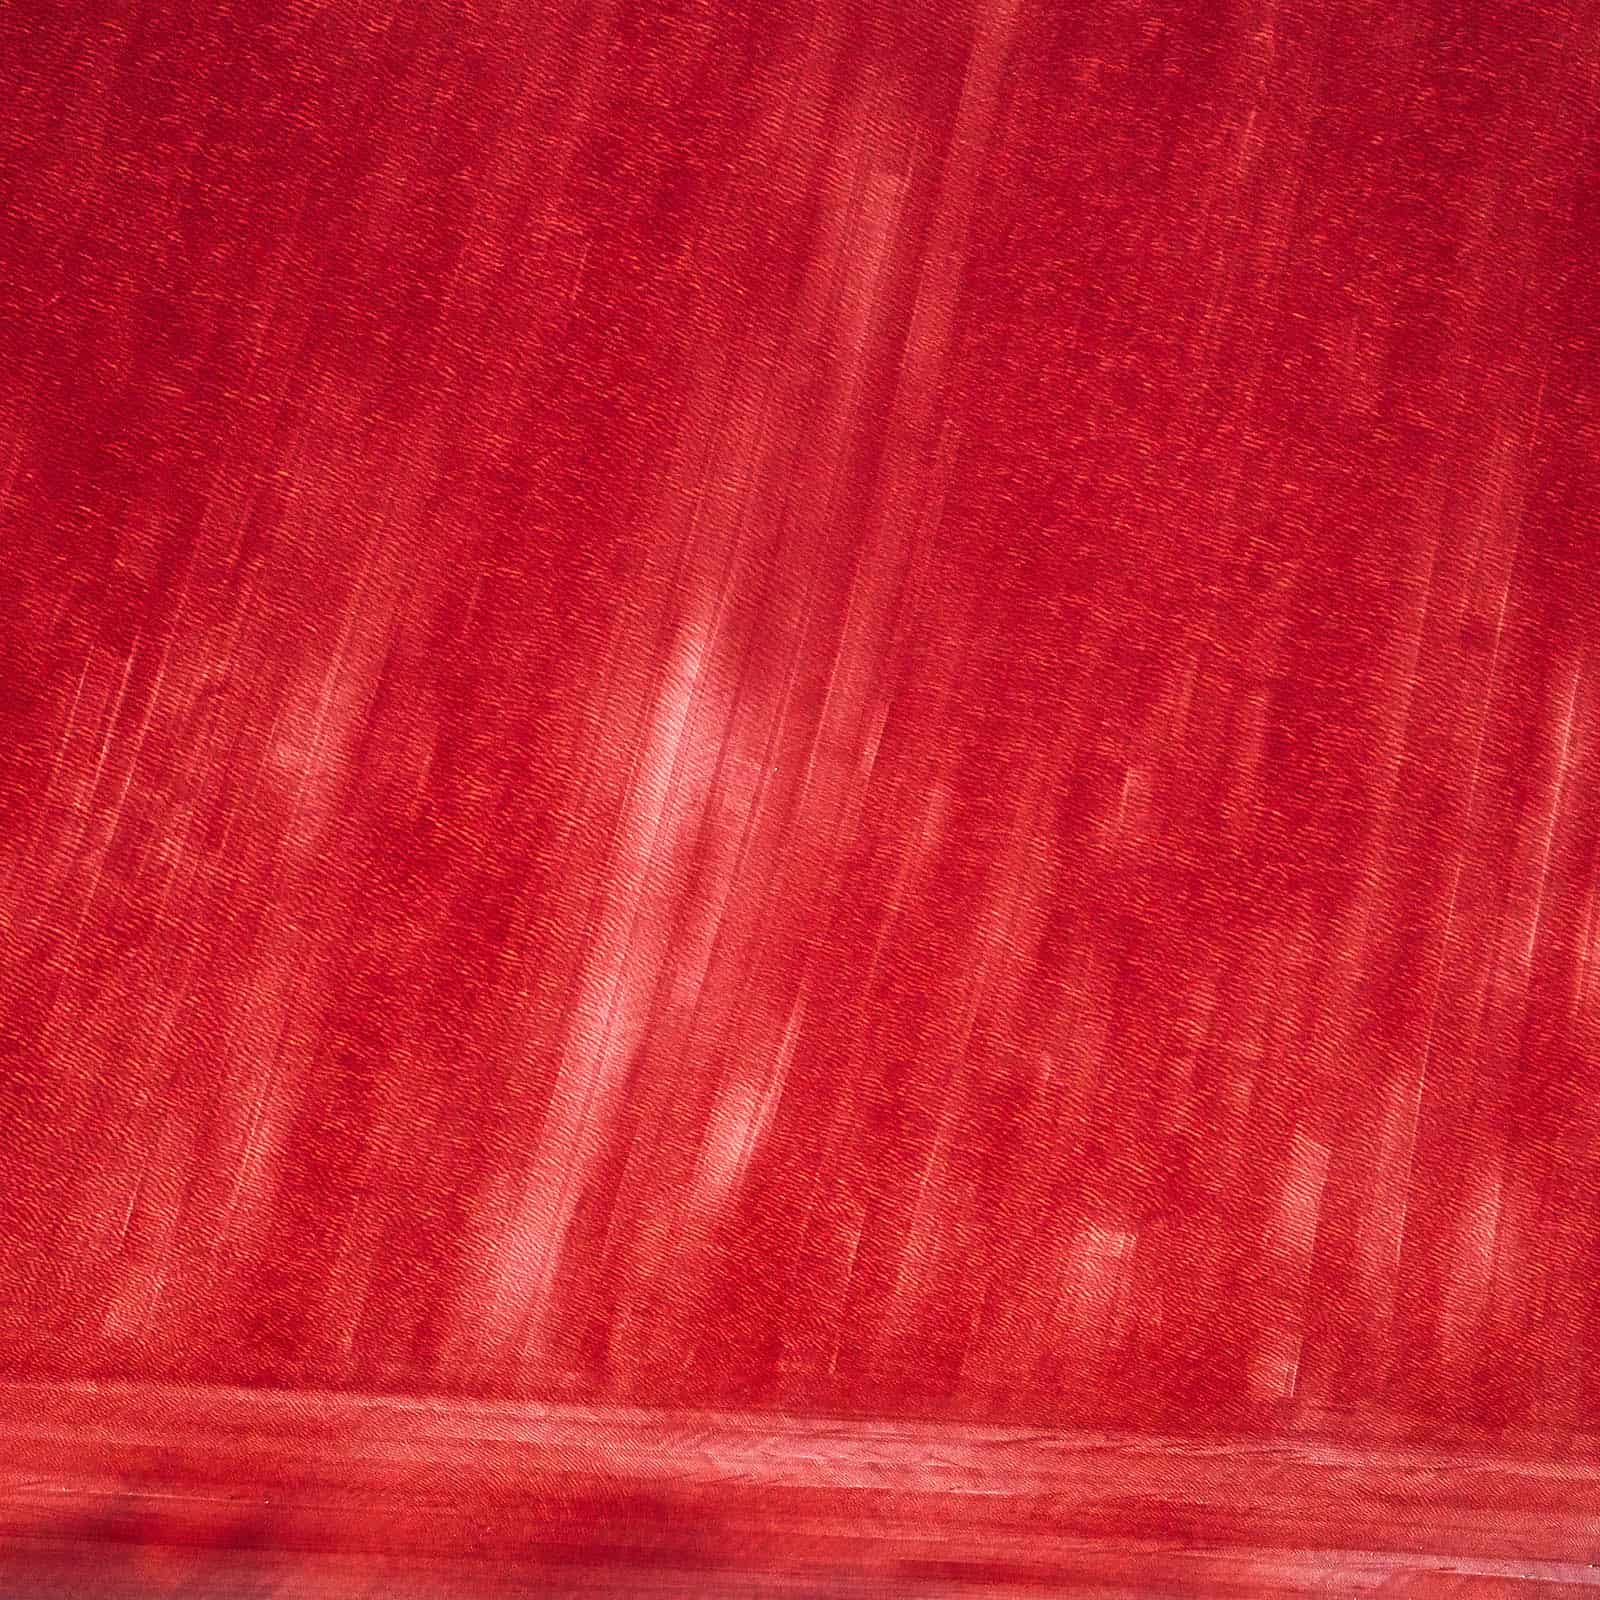 "Red" Salzlandschaft aus der Vogelperspektive, wunderbares Farben in allen Rottönen